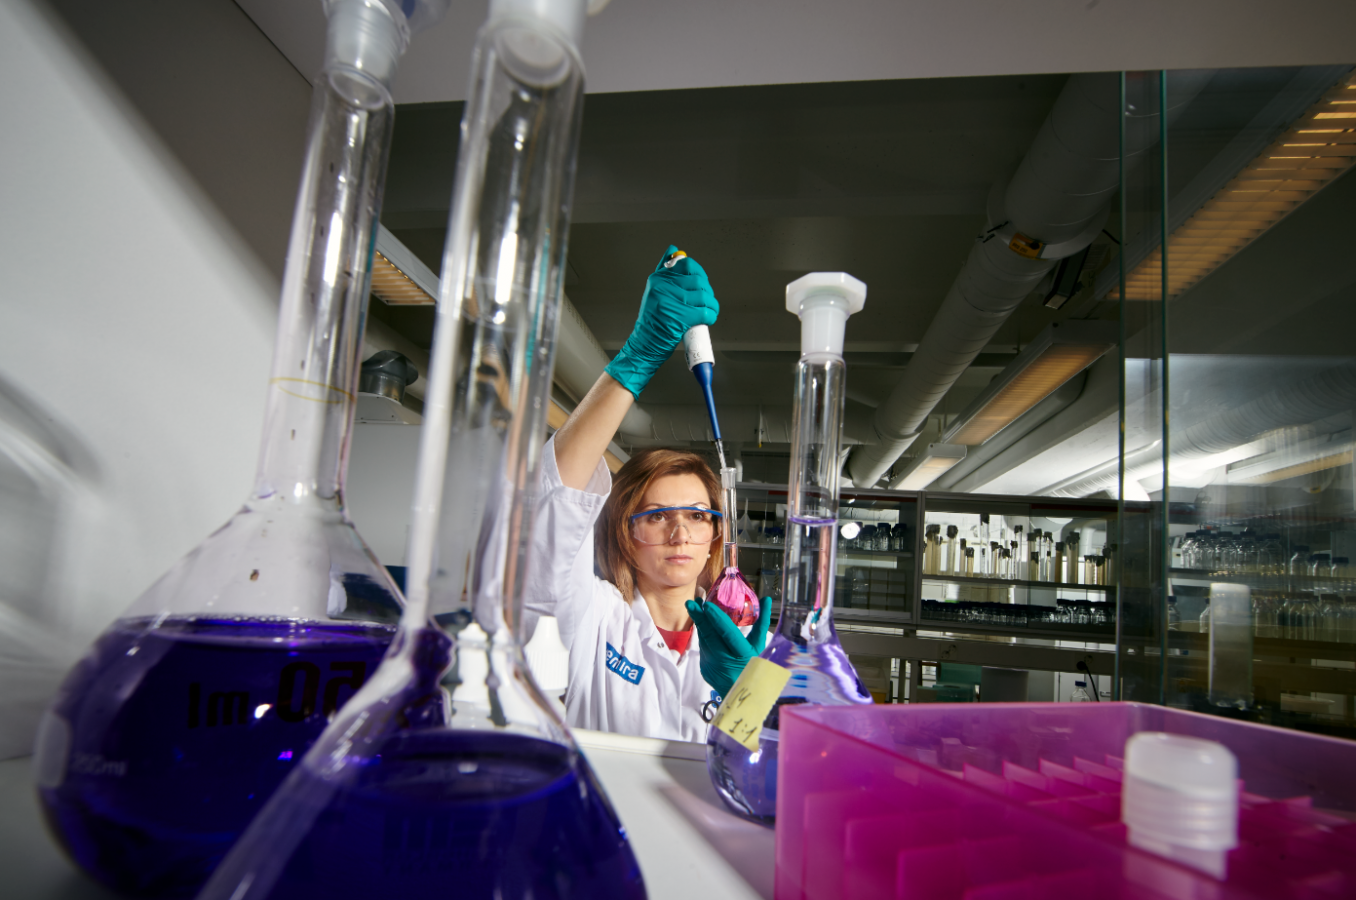 Nainen laboratoriossa pitelee kädessään suurta annostelijaa ja pulloa, jossa on vaaleanpunaista nestettä. Naisella on valkoinen laboratoriotakki, läpinäkyvät suojalasit ja kädessään turkoosit kumihanskat.